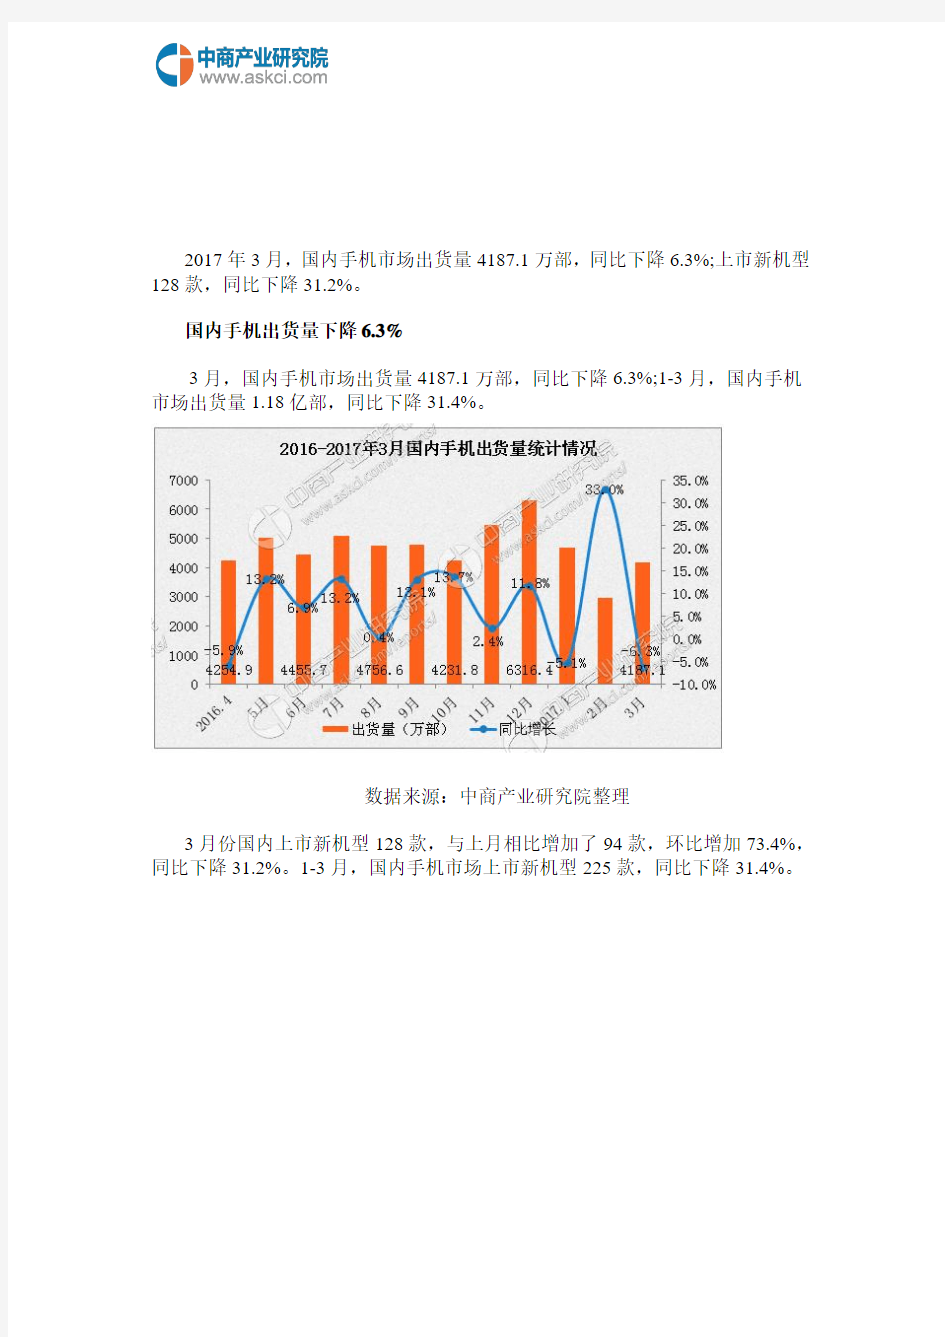 中国手机市场运行情况分析报告(2017年3月)